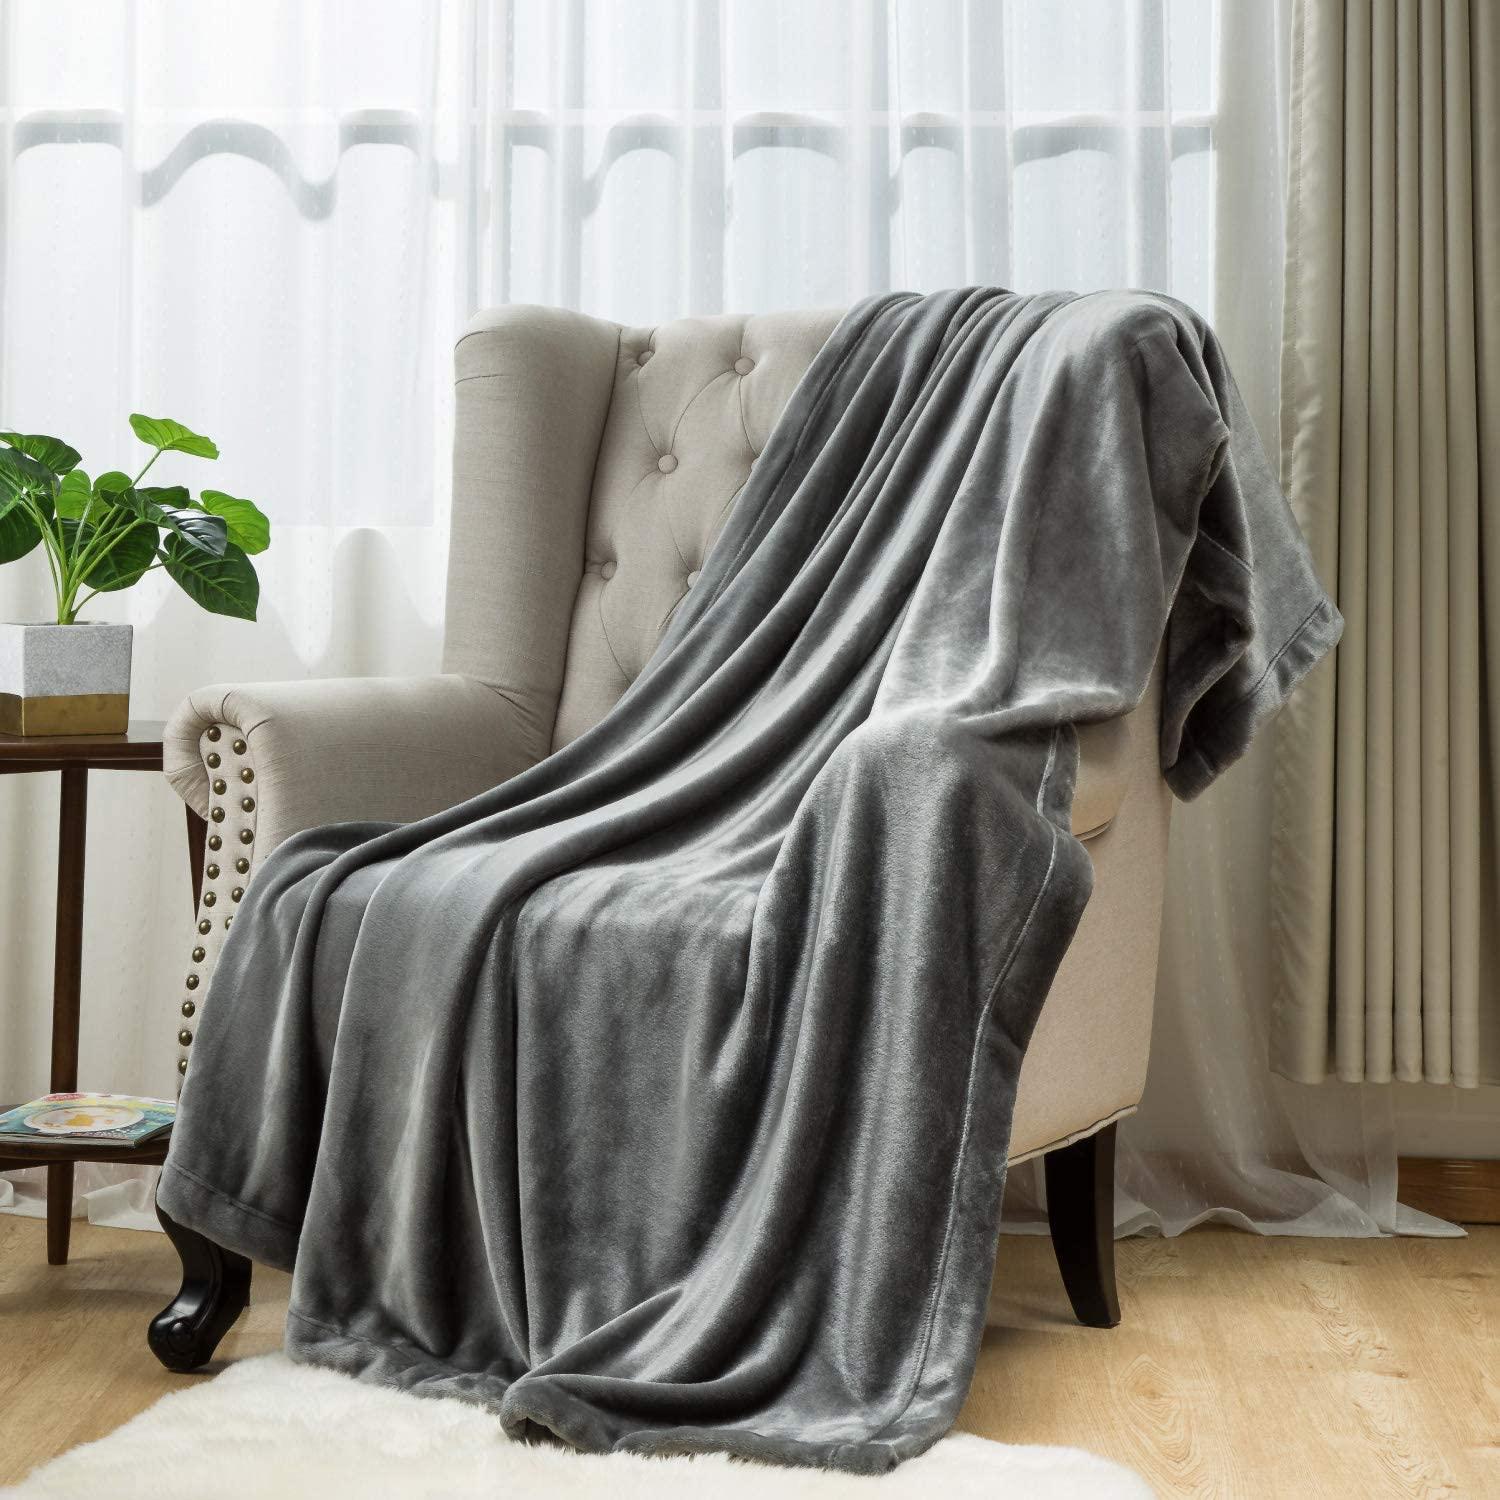 Bedsure Fleece Blanket Throw for $7.99